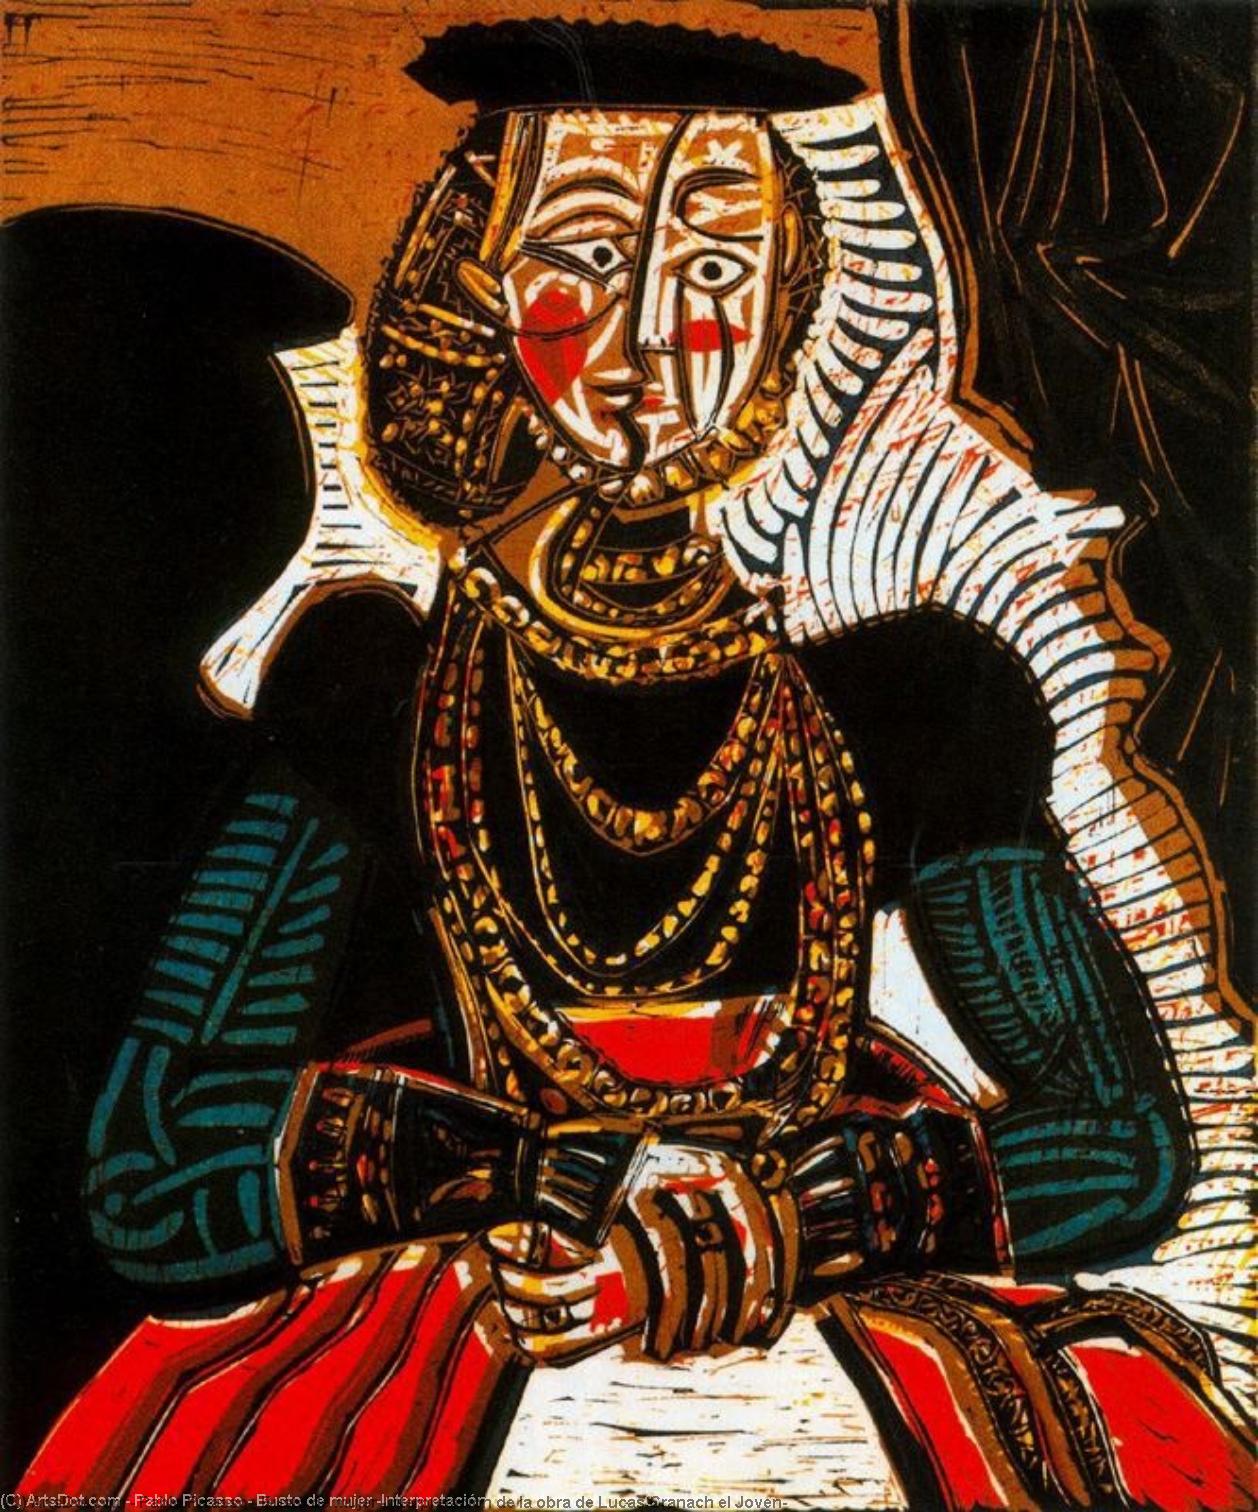 WikiOO.org - Encyclopedia of Fine Arts - Maleri, Artwork Pablo Picasso - Busto de mujer (Interpretación de la obra de Lucas Cranach el Joven)